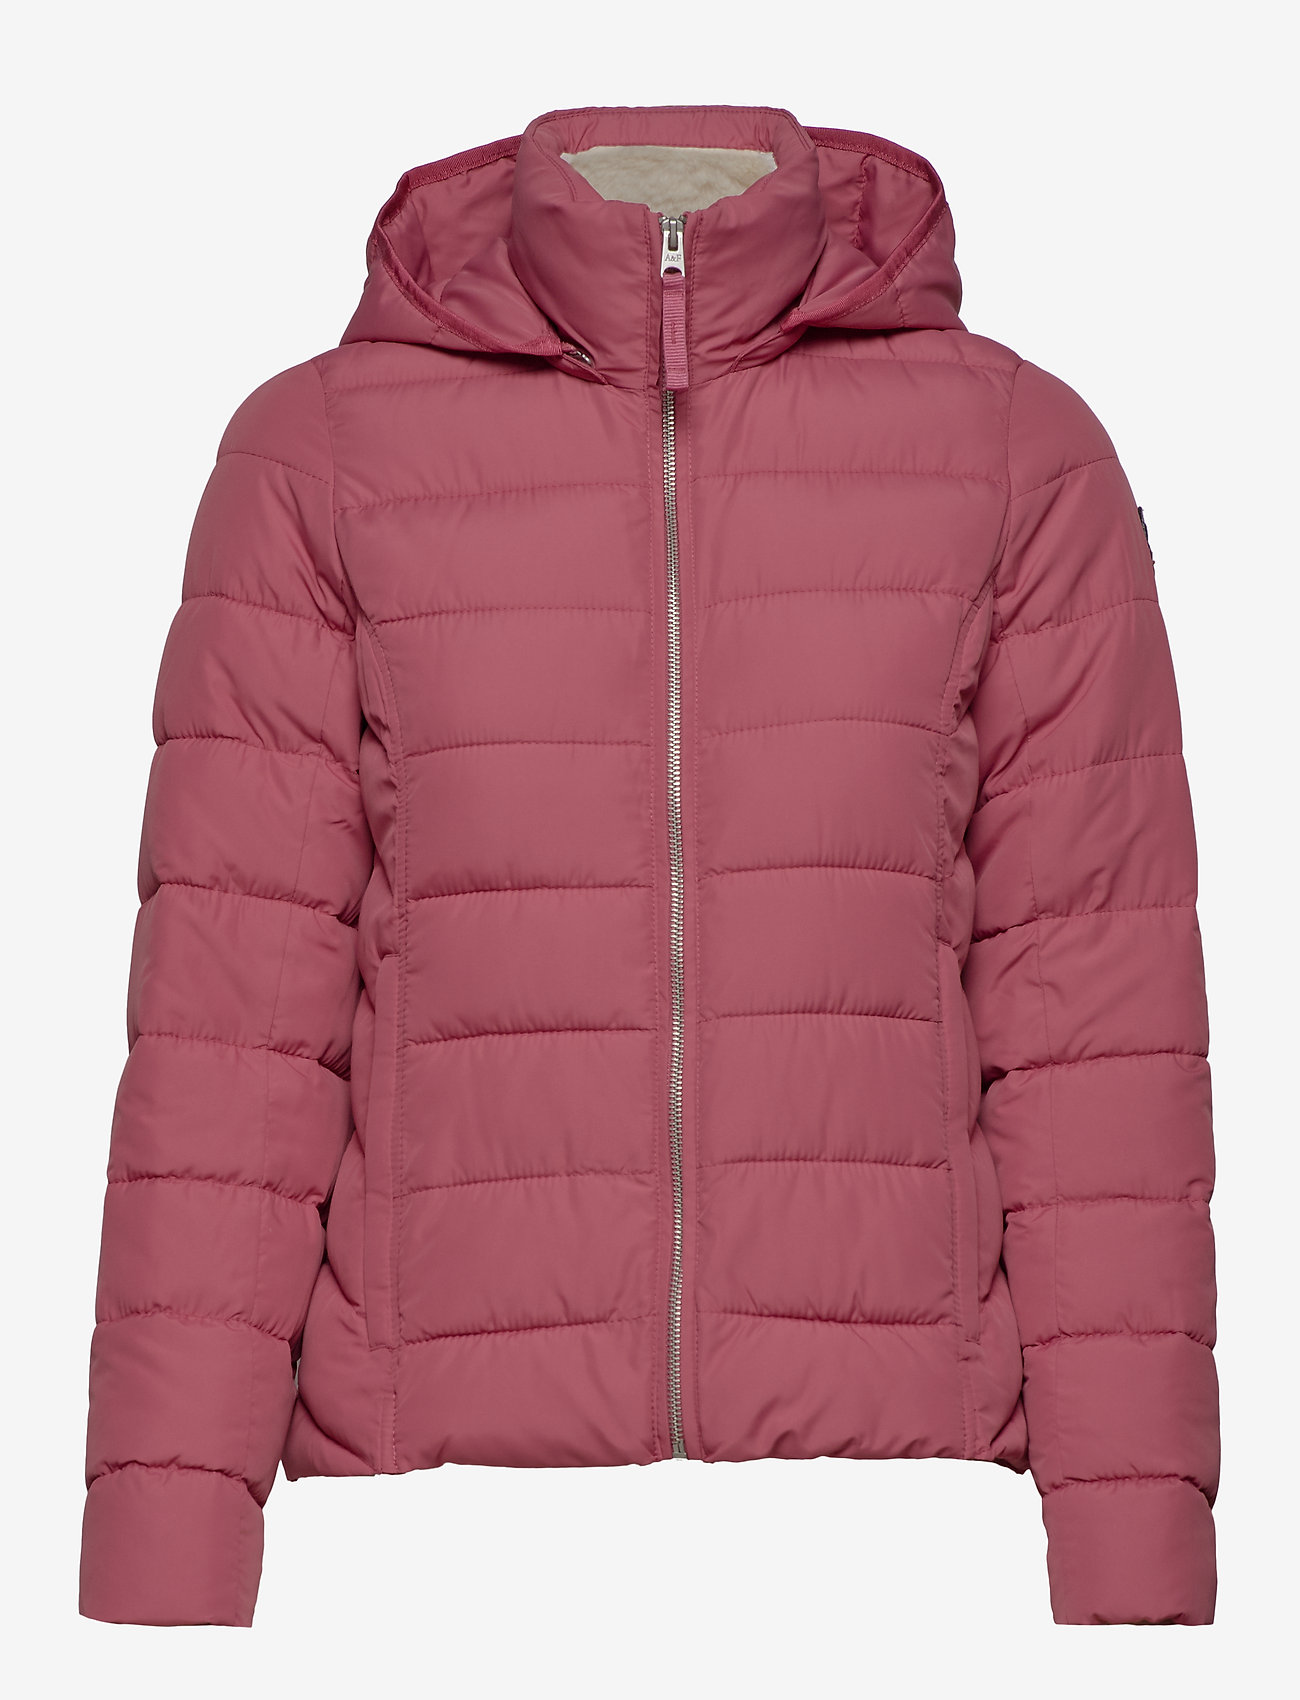 abercrombie pink coat